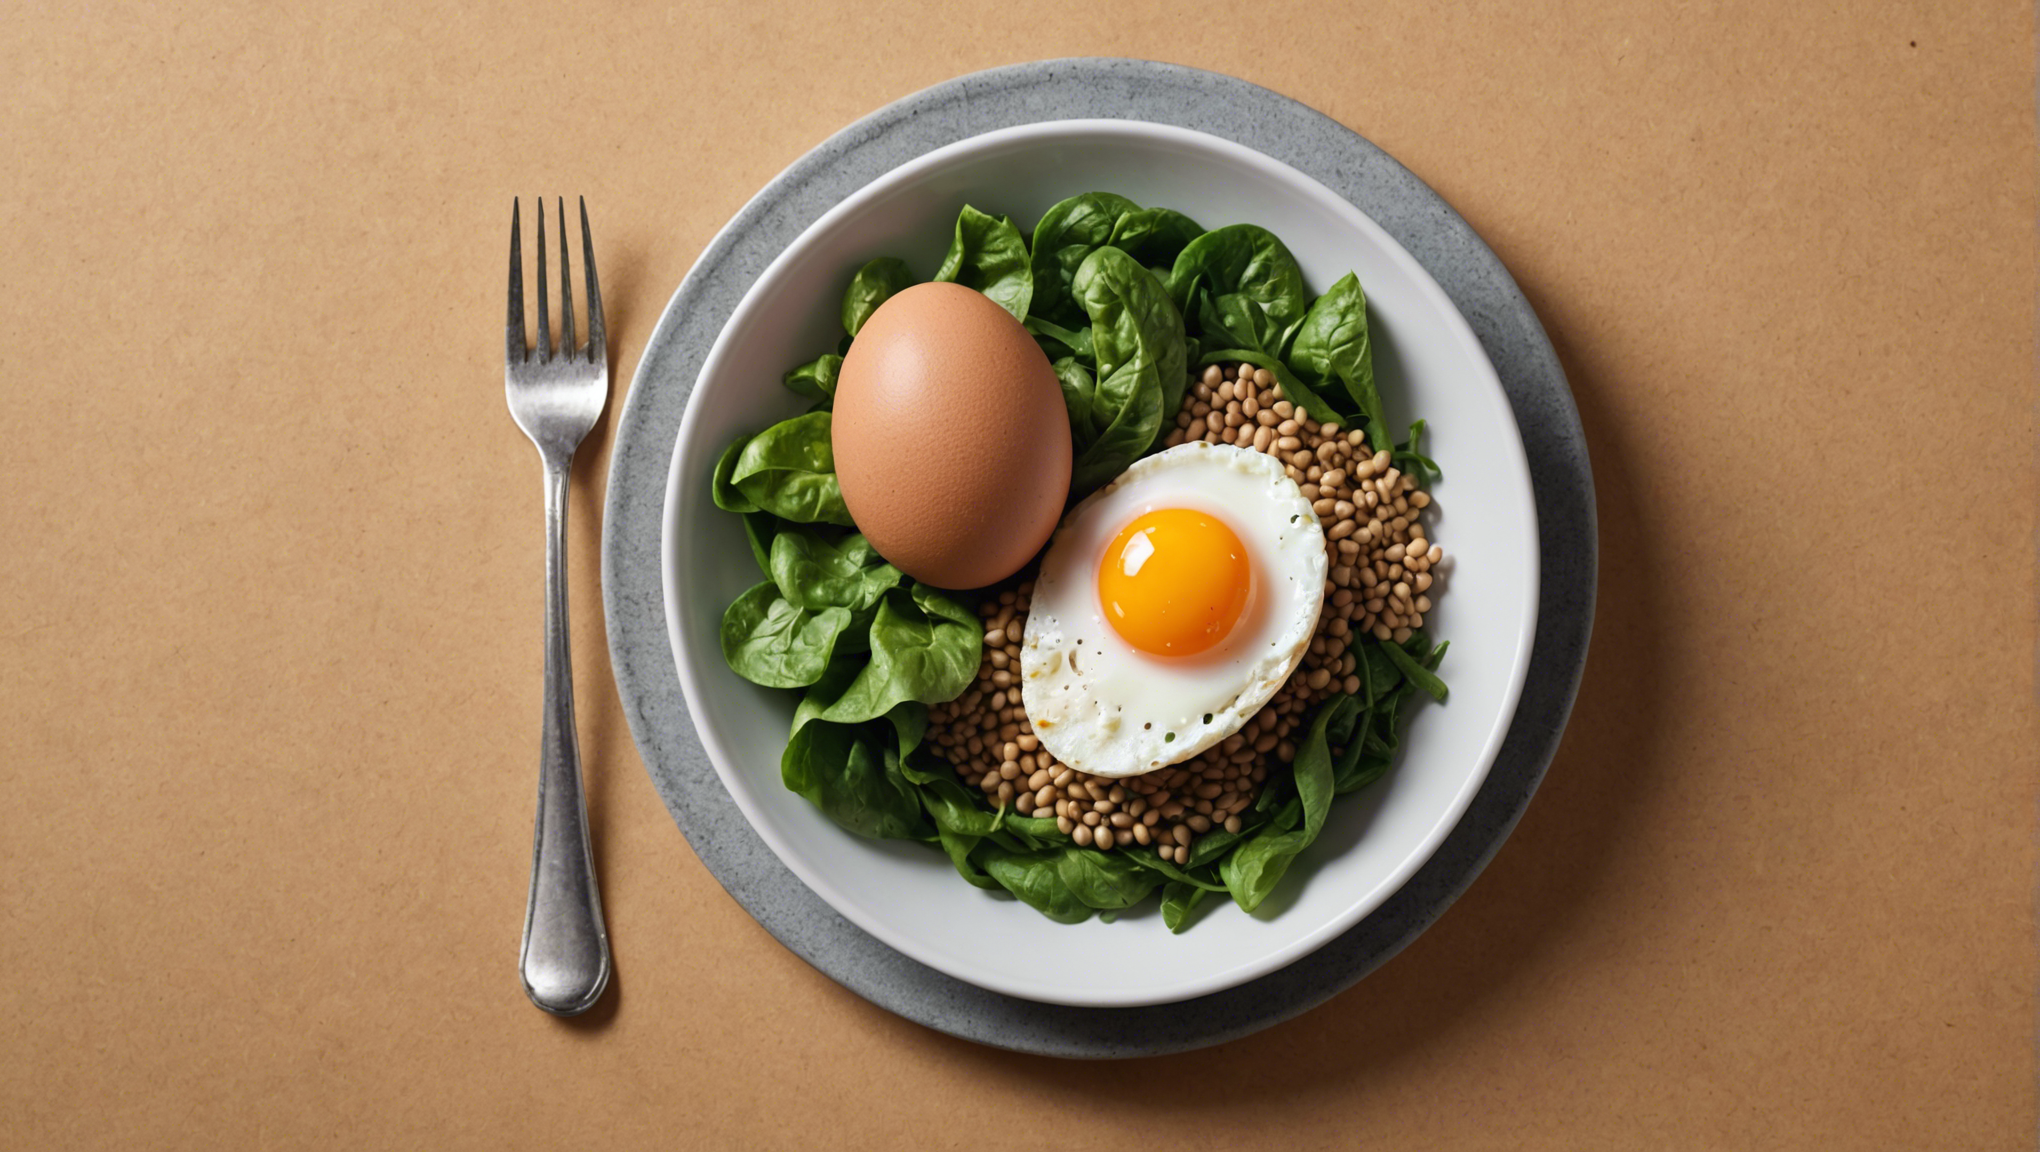 découvrez les avantages des protéines d'un œuf pour une alimentation équilibrée et saine. apprenez comment cet aliment peut devenir un allié précieux dans votre régime alimentaire.